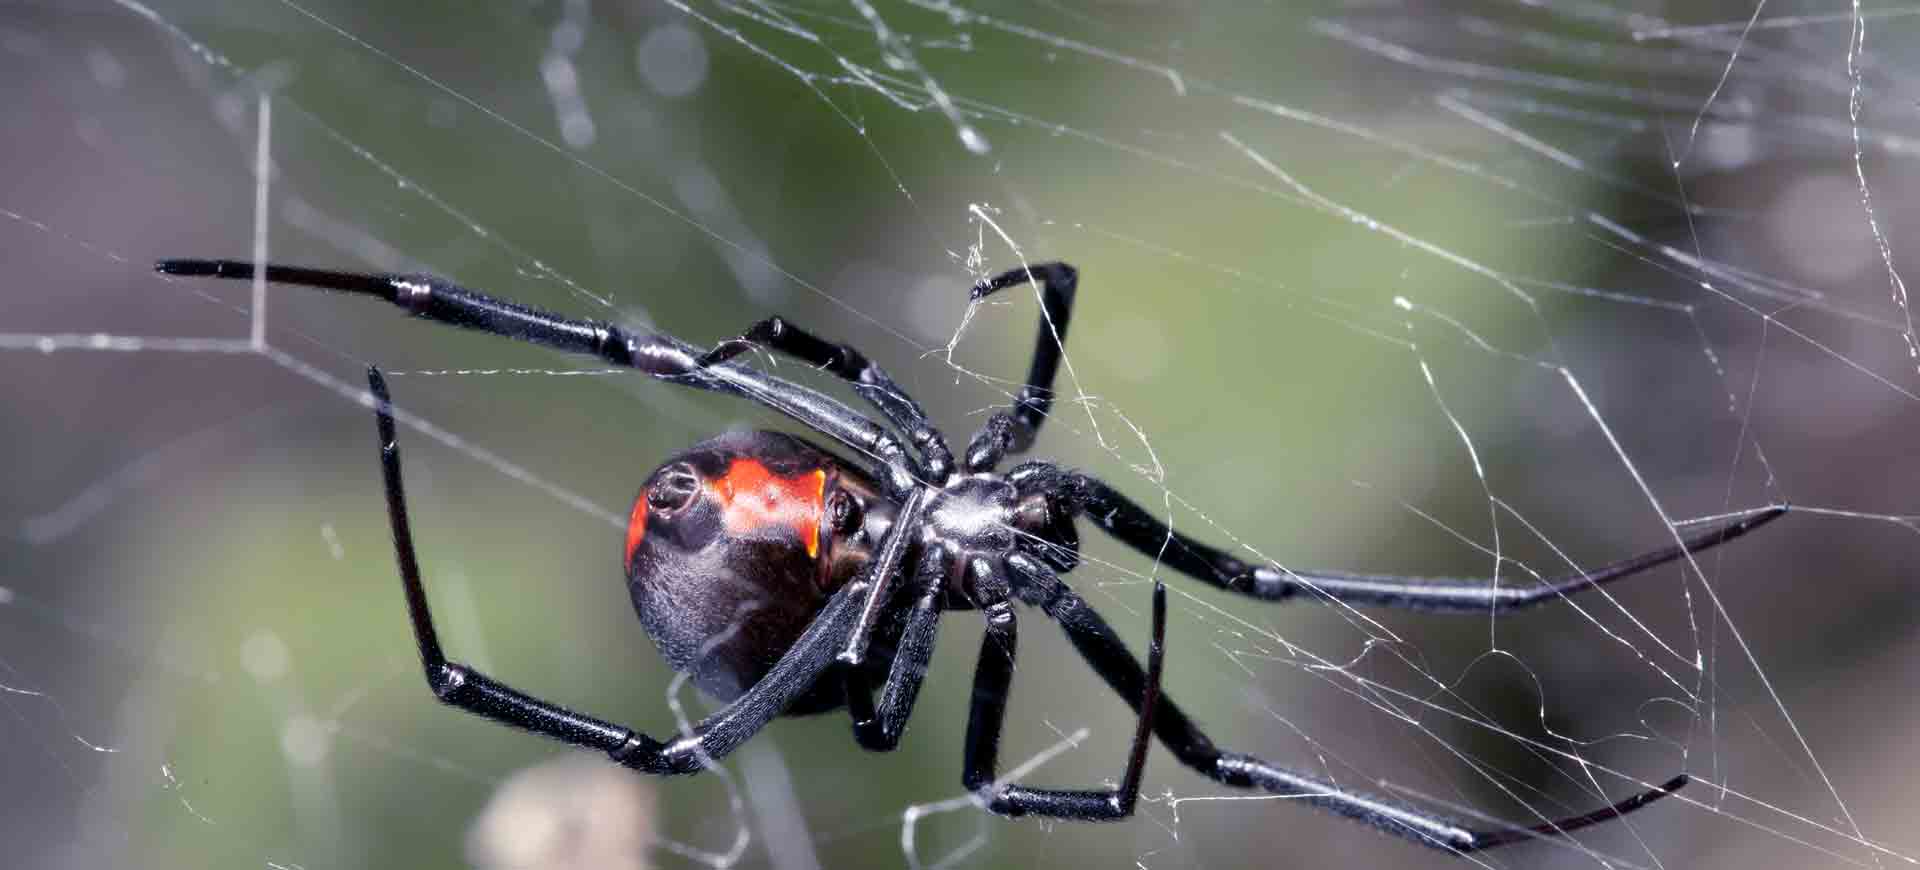 spider pest control bonita